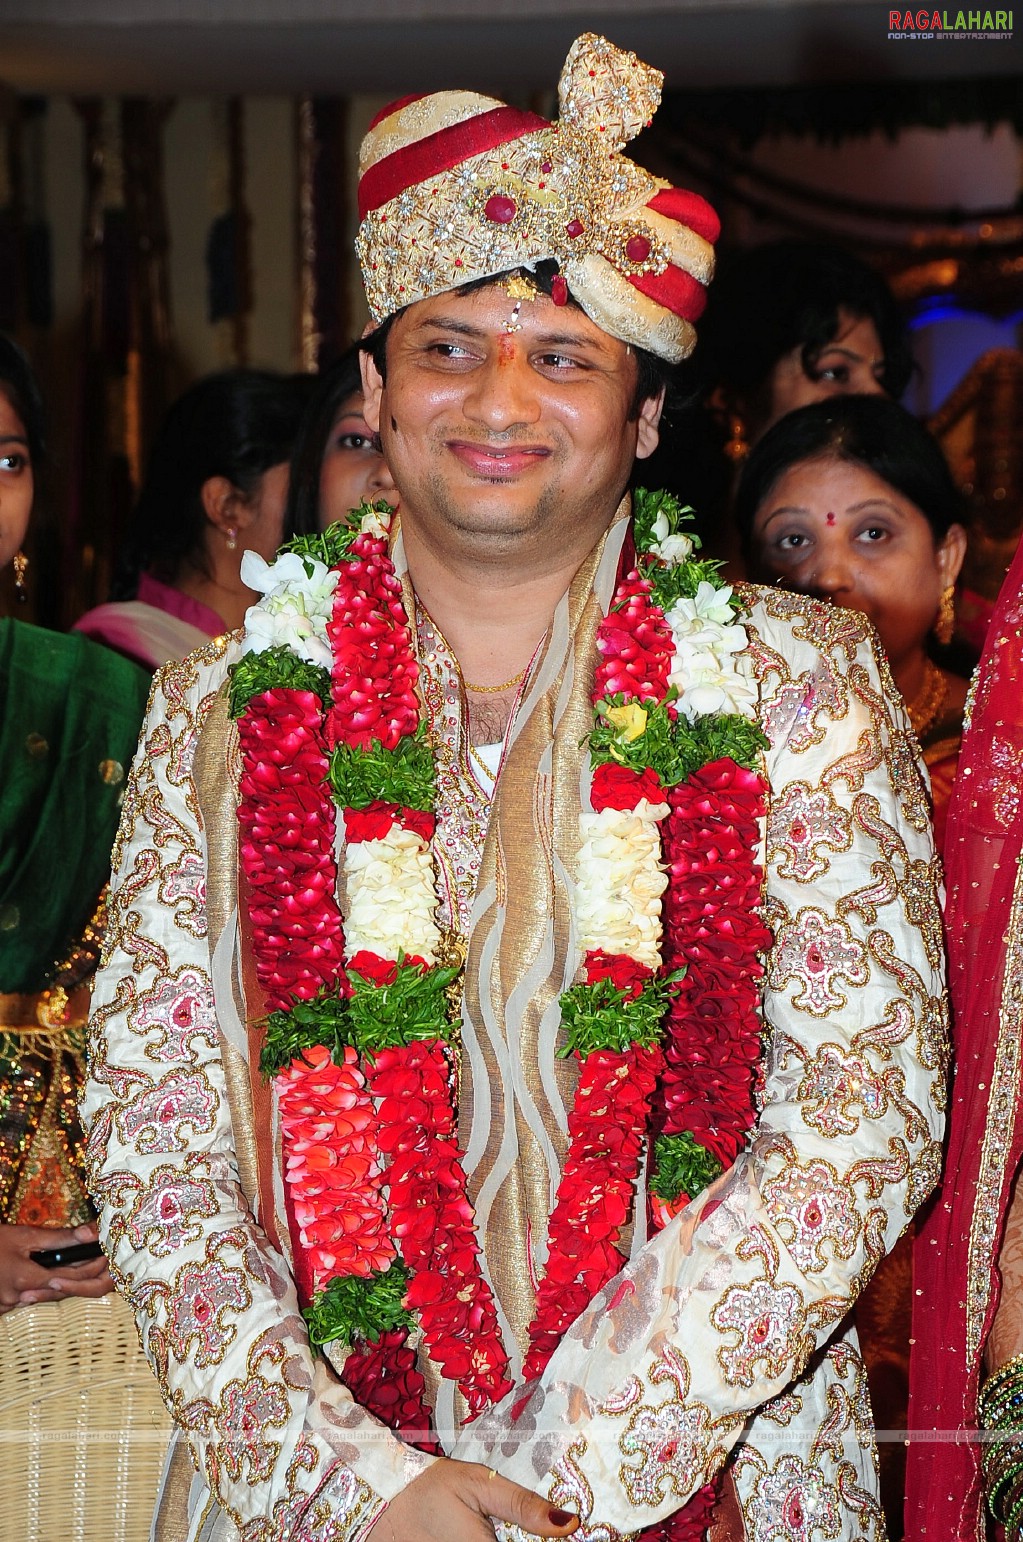 Surender Reddy-Deepa Wedding Function